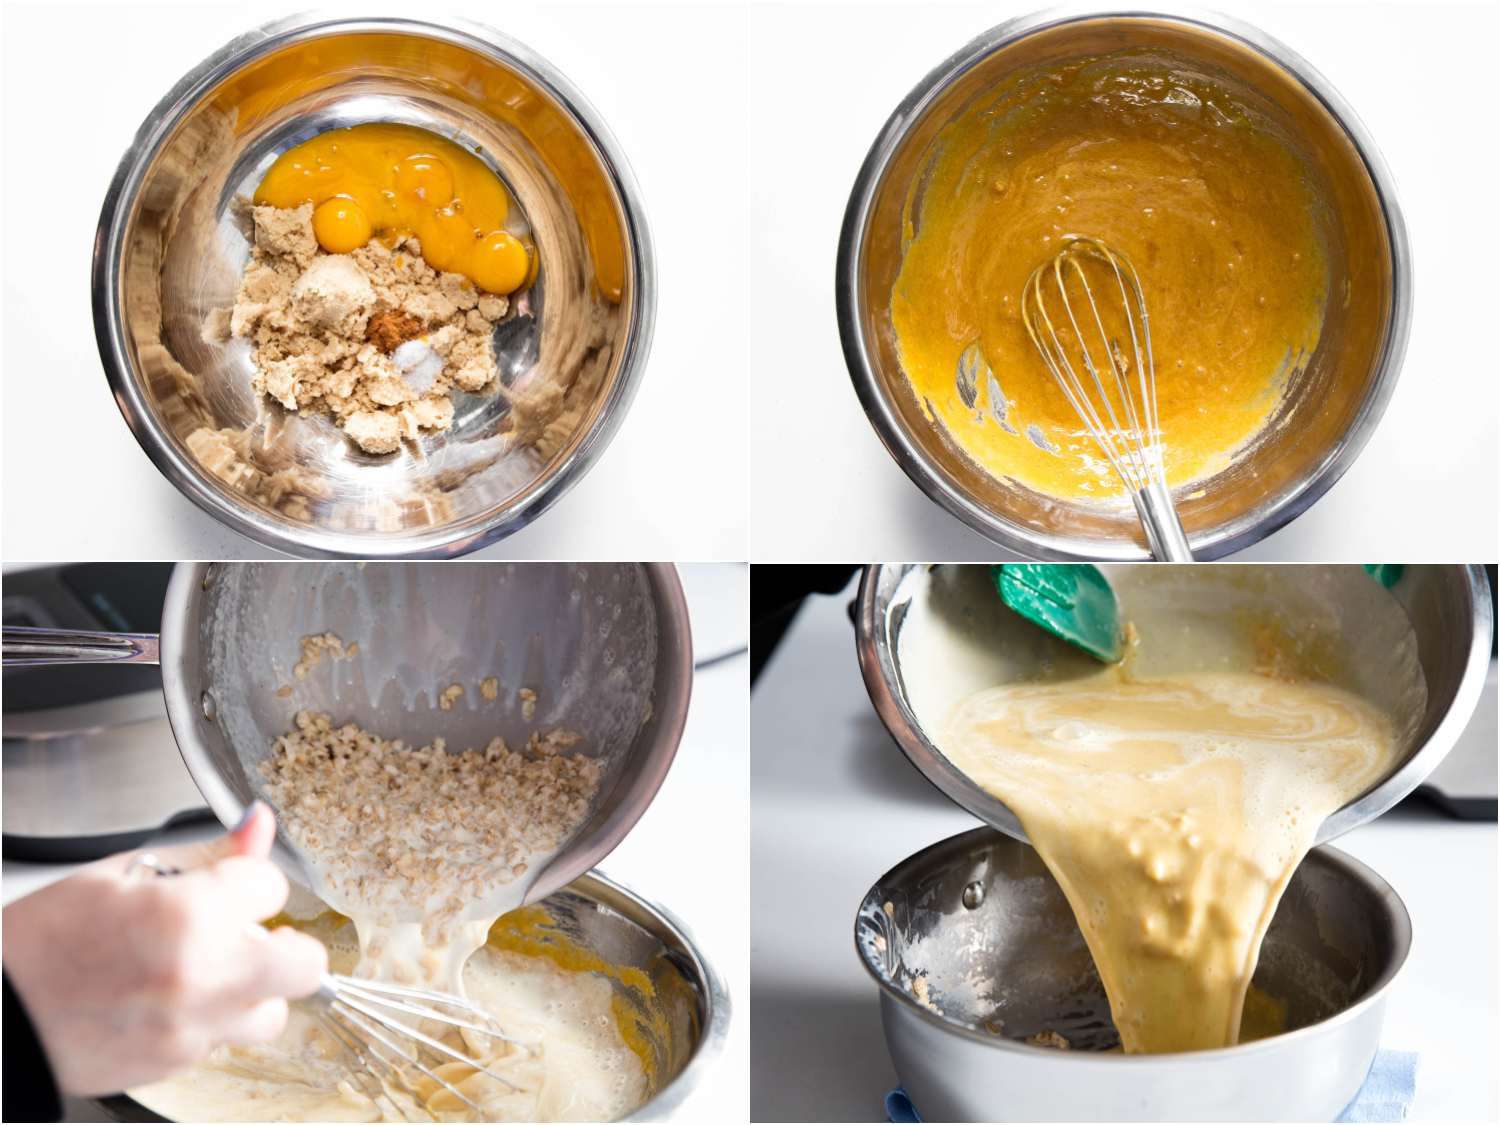 制作燕麦冰淇淋的步骤:将蛋黄、红糖和香料混合;搅拌蛋液;在鸡蛋混合物中加入燕麦牛奶